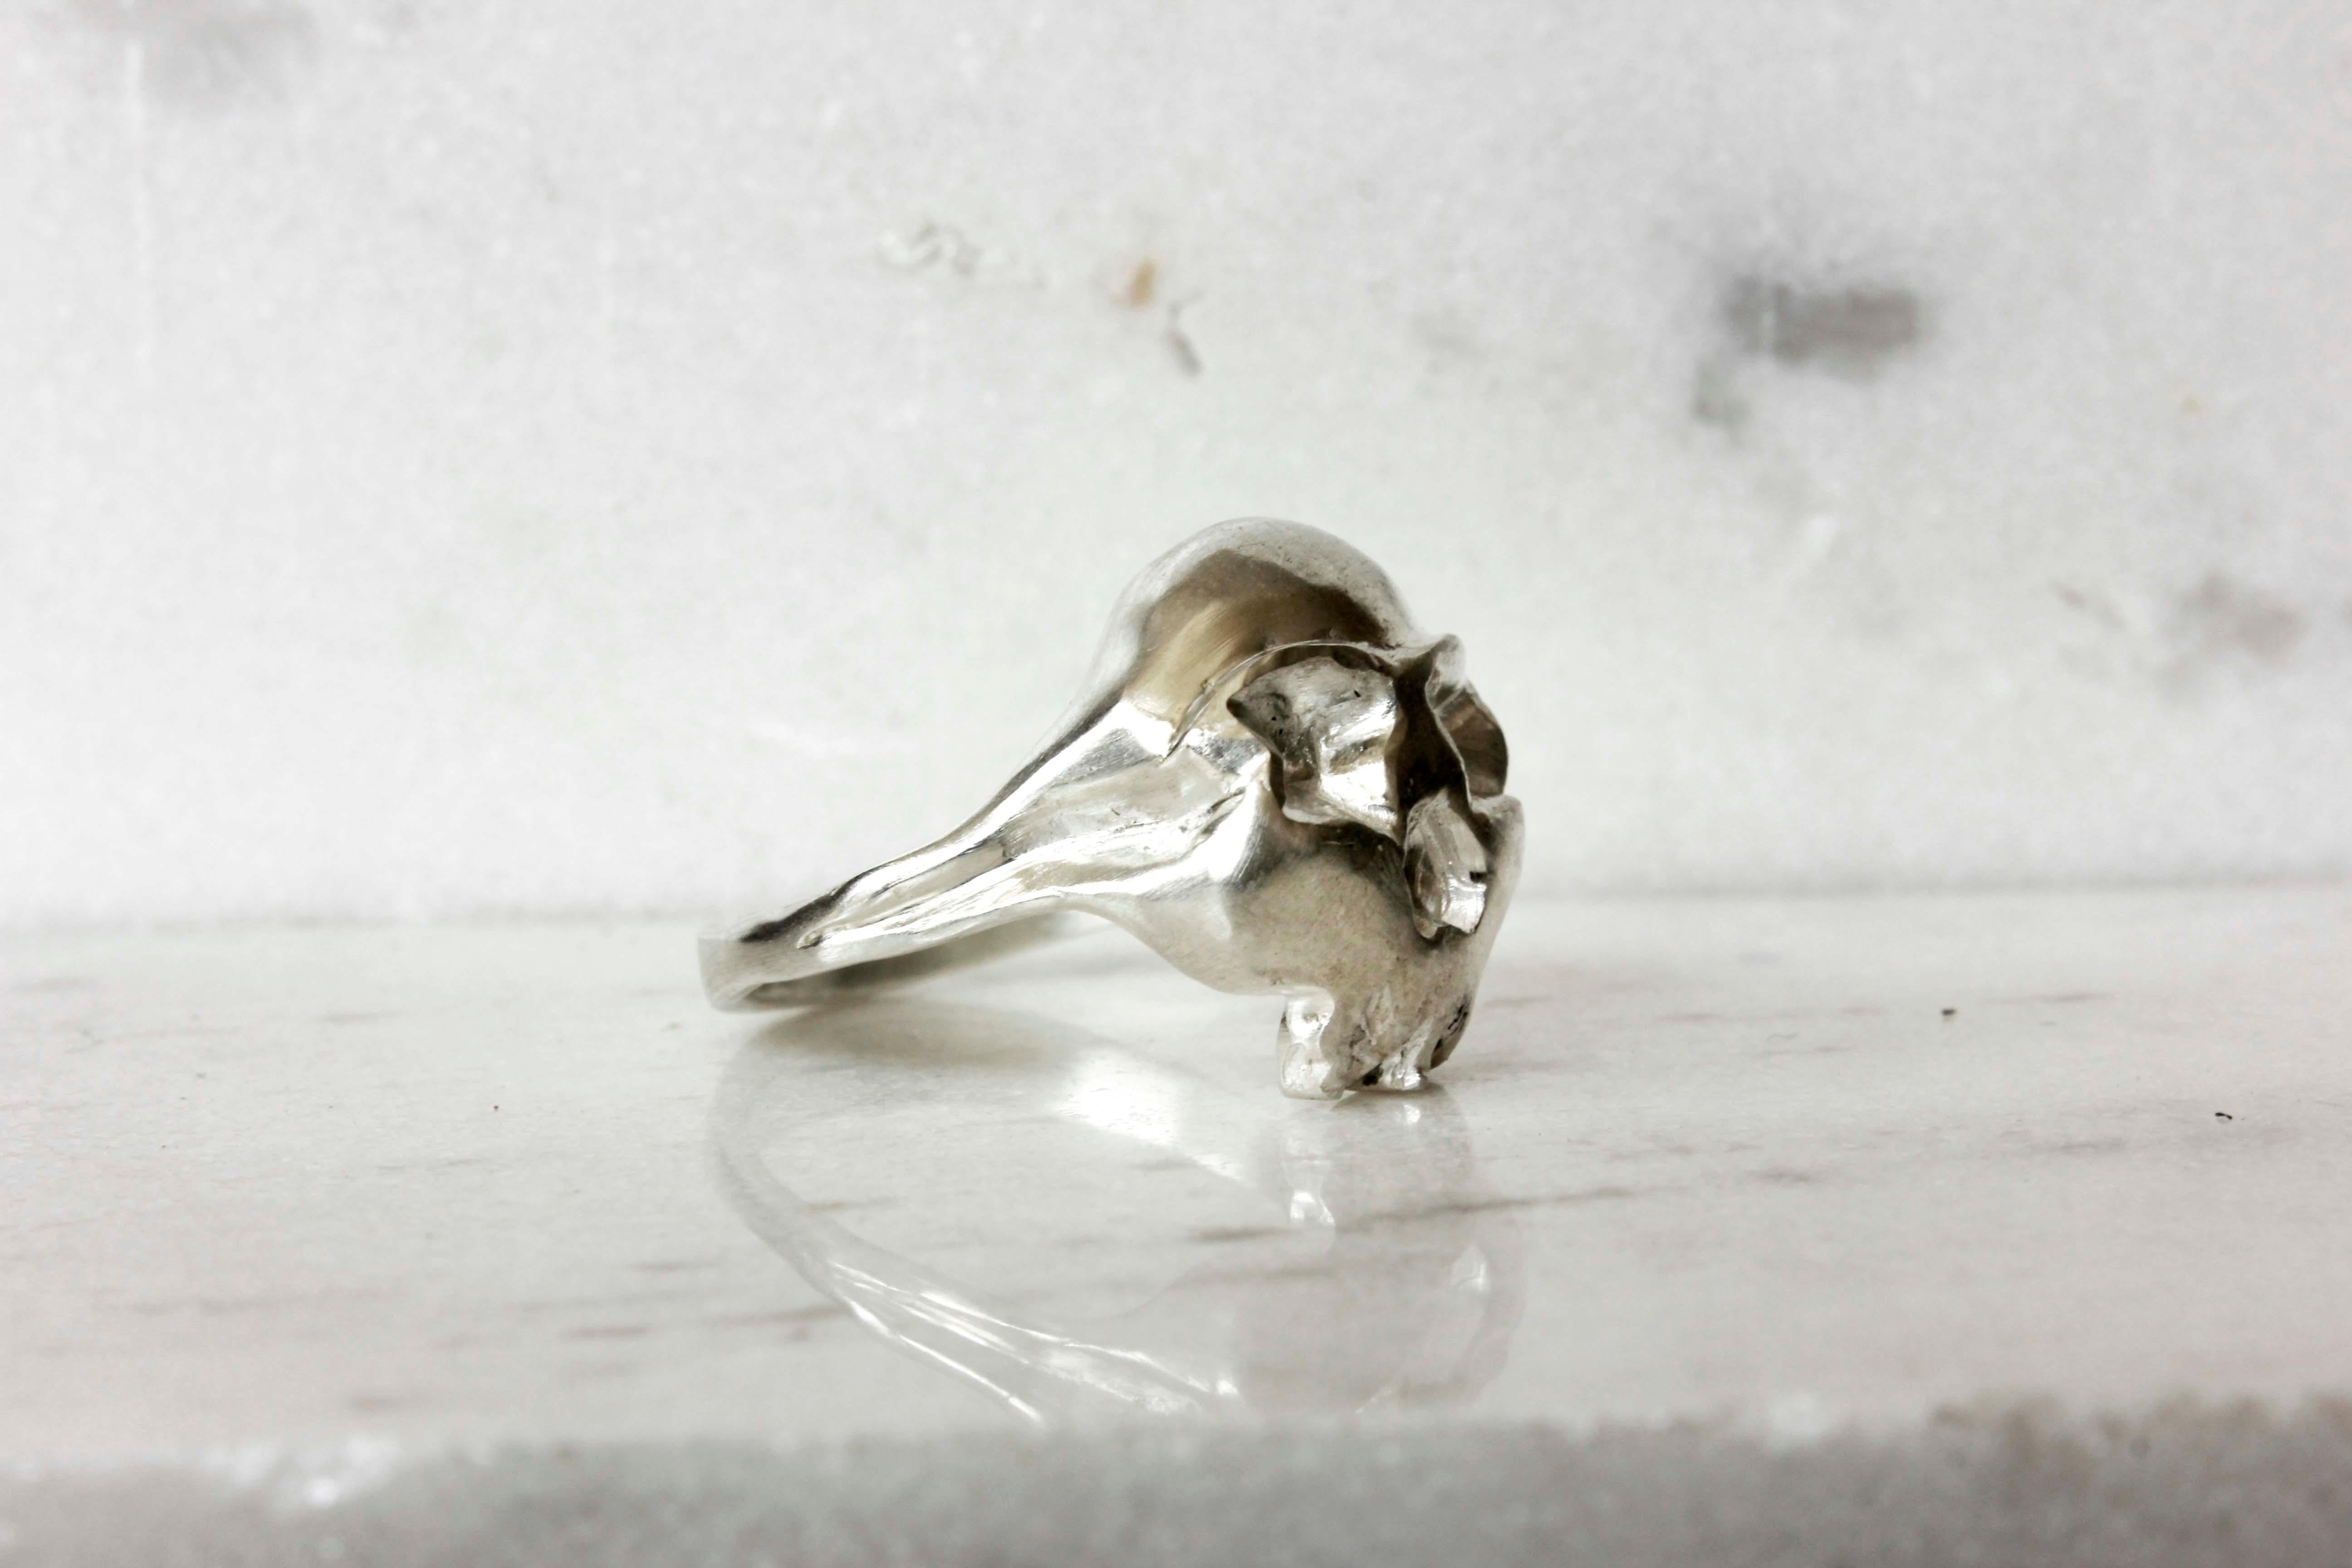 Dies ist ein Rock n Roll, Unisex-Totenkopf Silber Ring.

Sie ist komplett handgefertigt und kann Ihrem Outfit ein rockiges Detail hinzufügen.